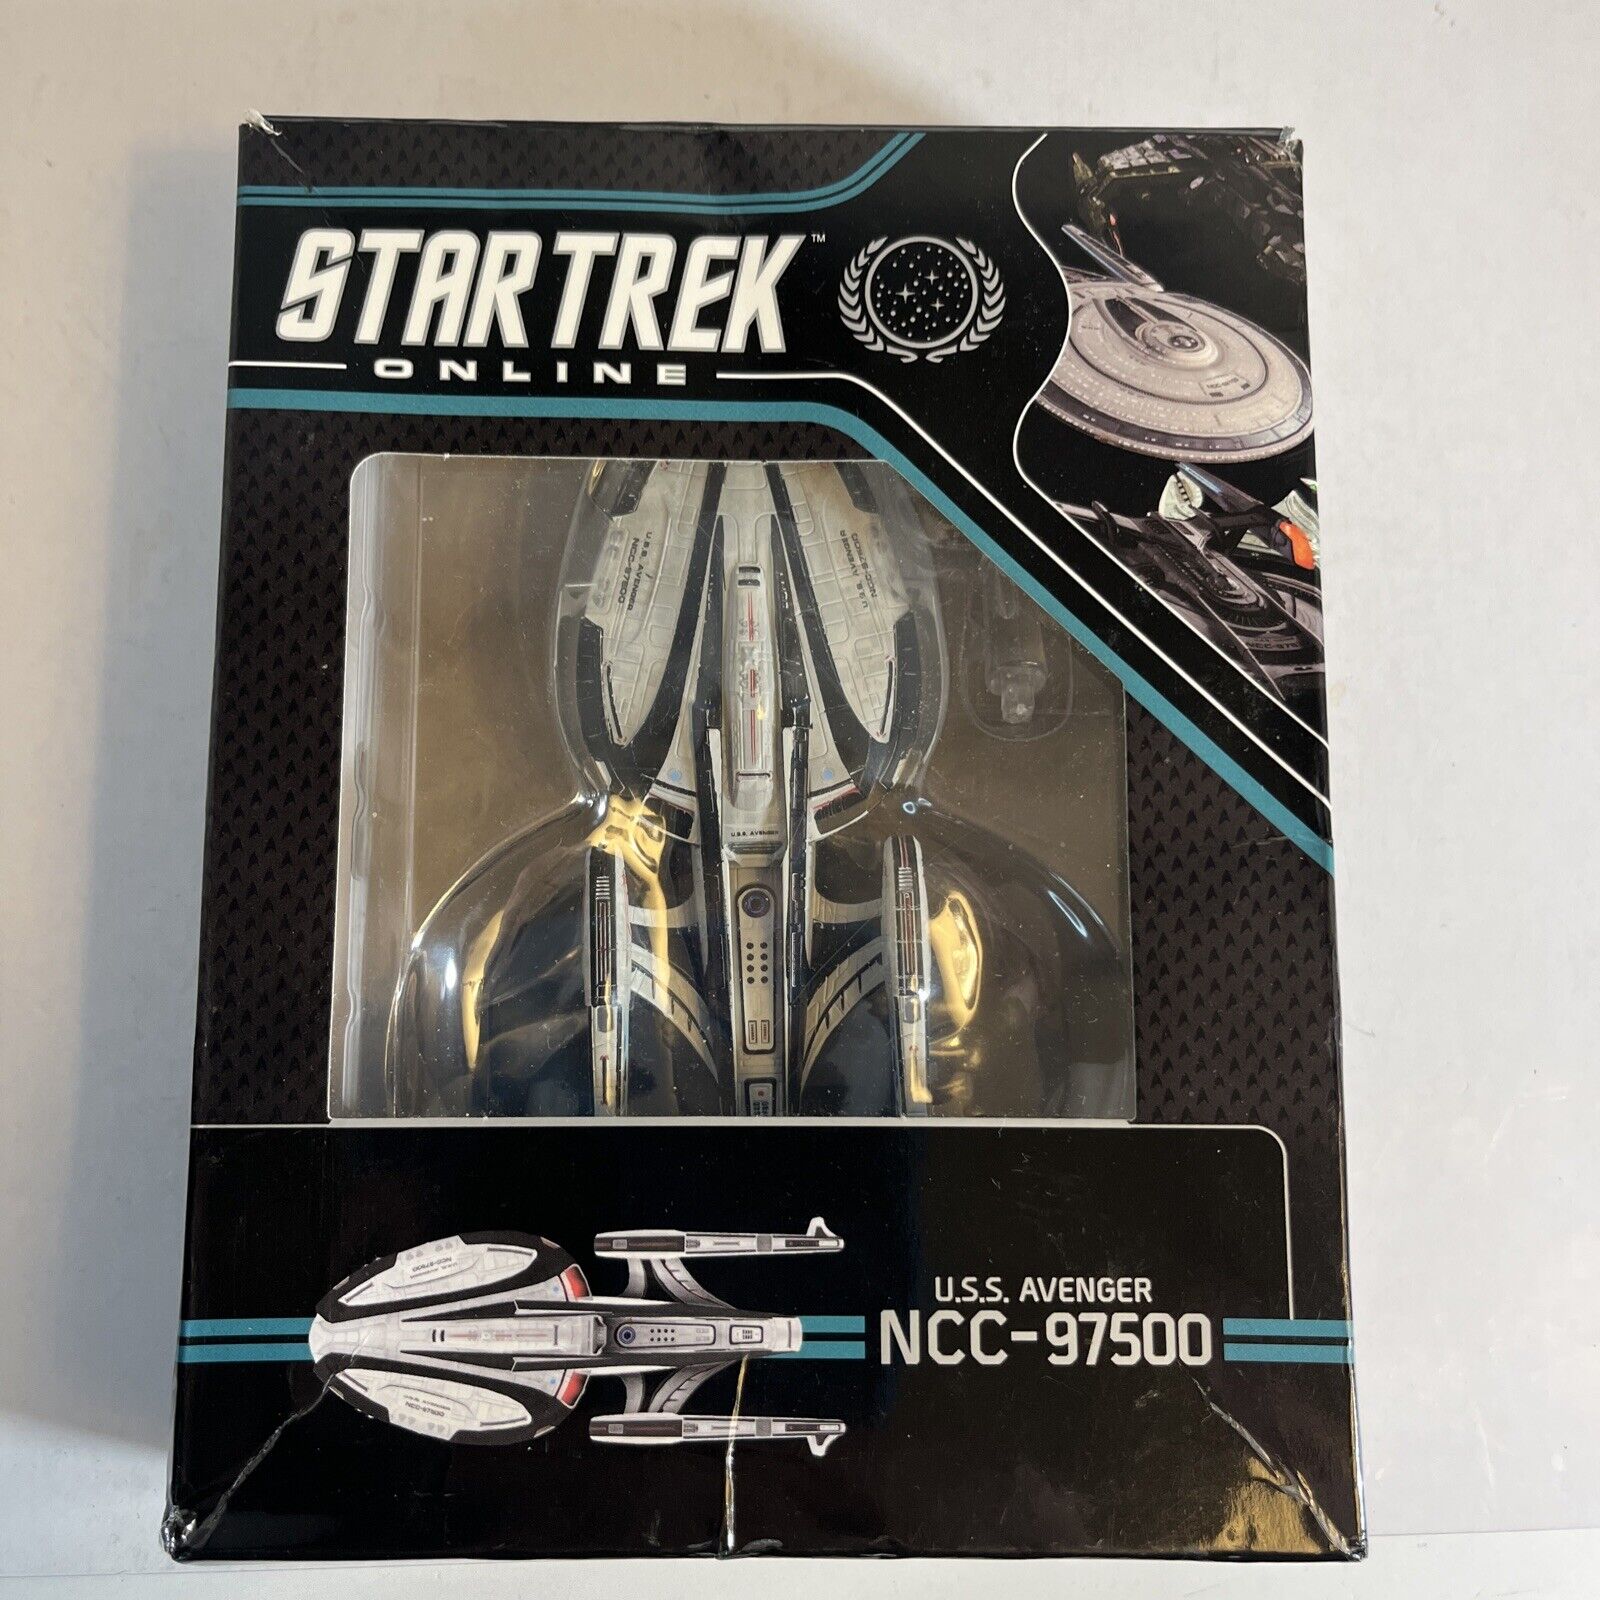 USS Avenger Spaceship Replica Star Trek Online 2021 Eaglemoss w/Magazine in Box